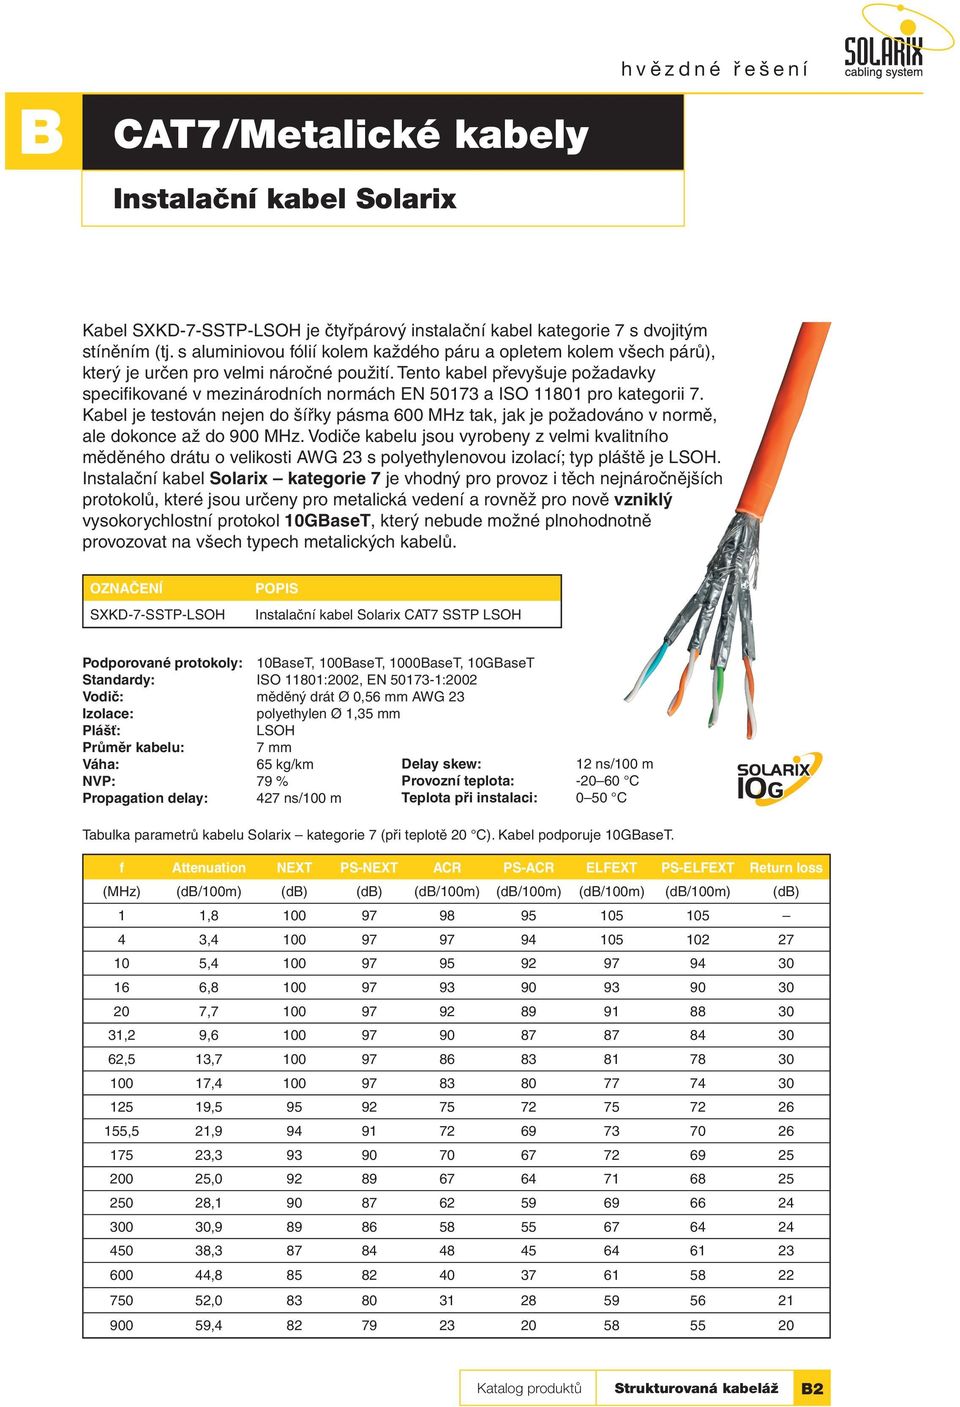 Tento kabel převyšuje požadavky specifikované v mezinárodních normách EN 50173 a ISO 11801 pro kategorii 7.